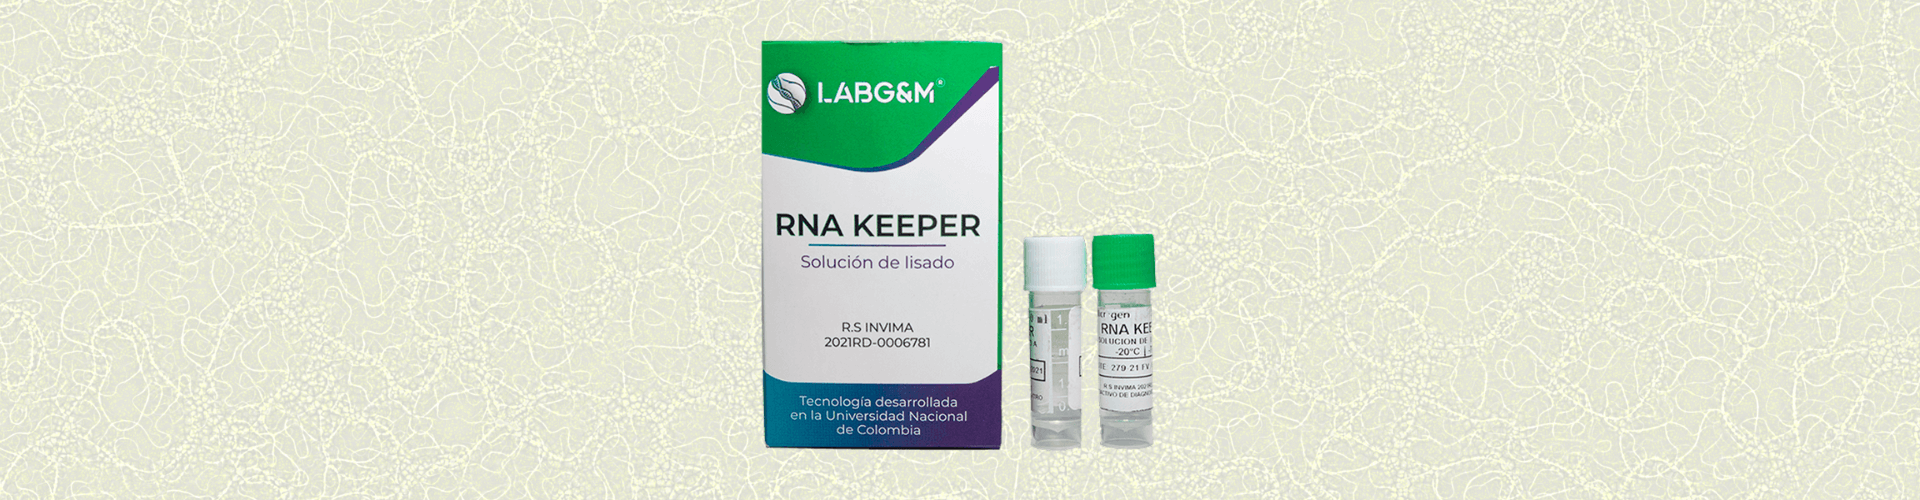 lanzamiento rna keeper-microgen